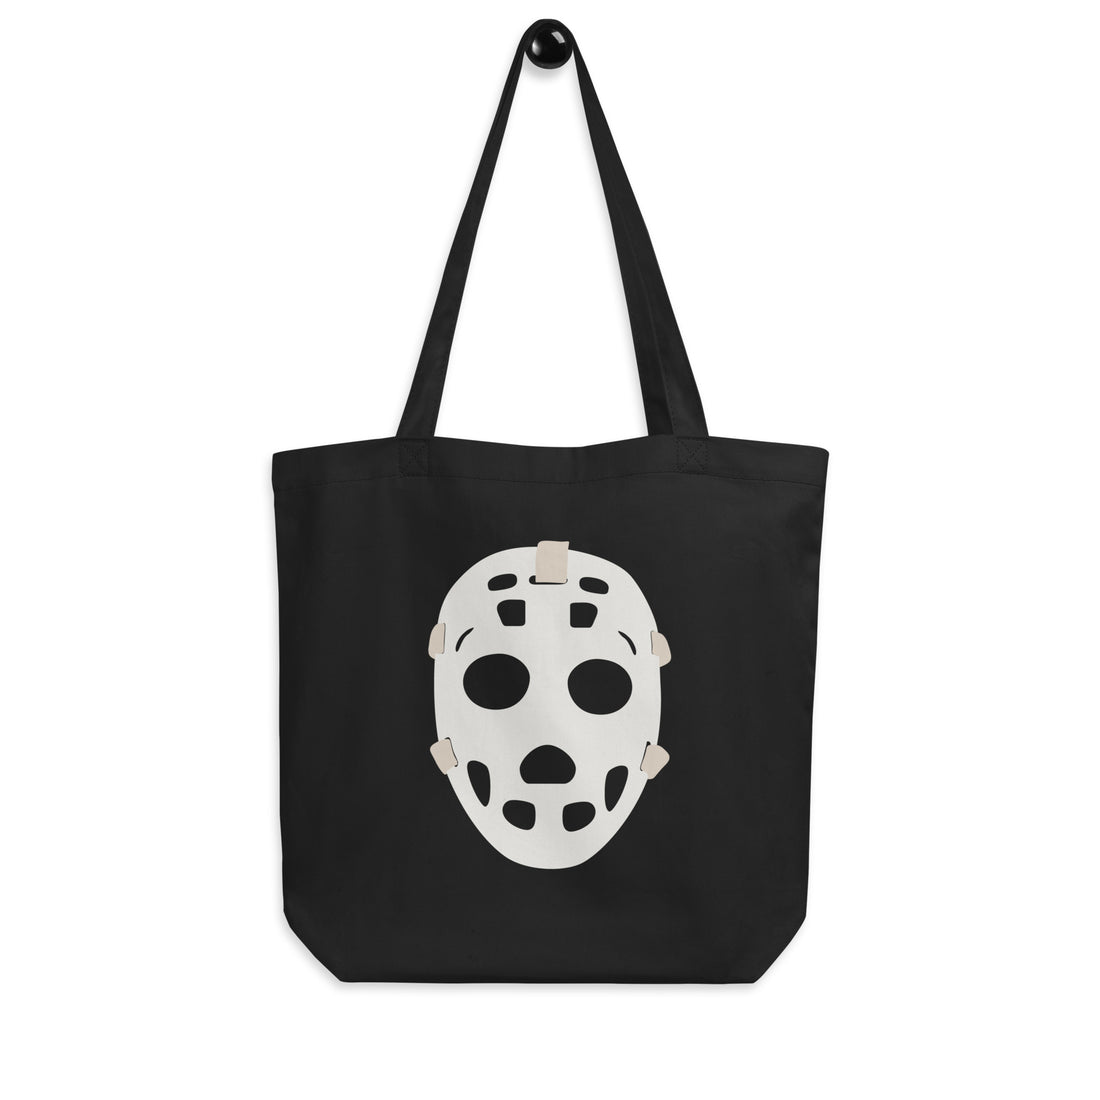 Riiink Old School Goalie Mask – Eco Tote Bag